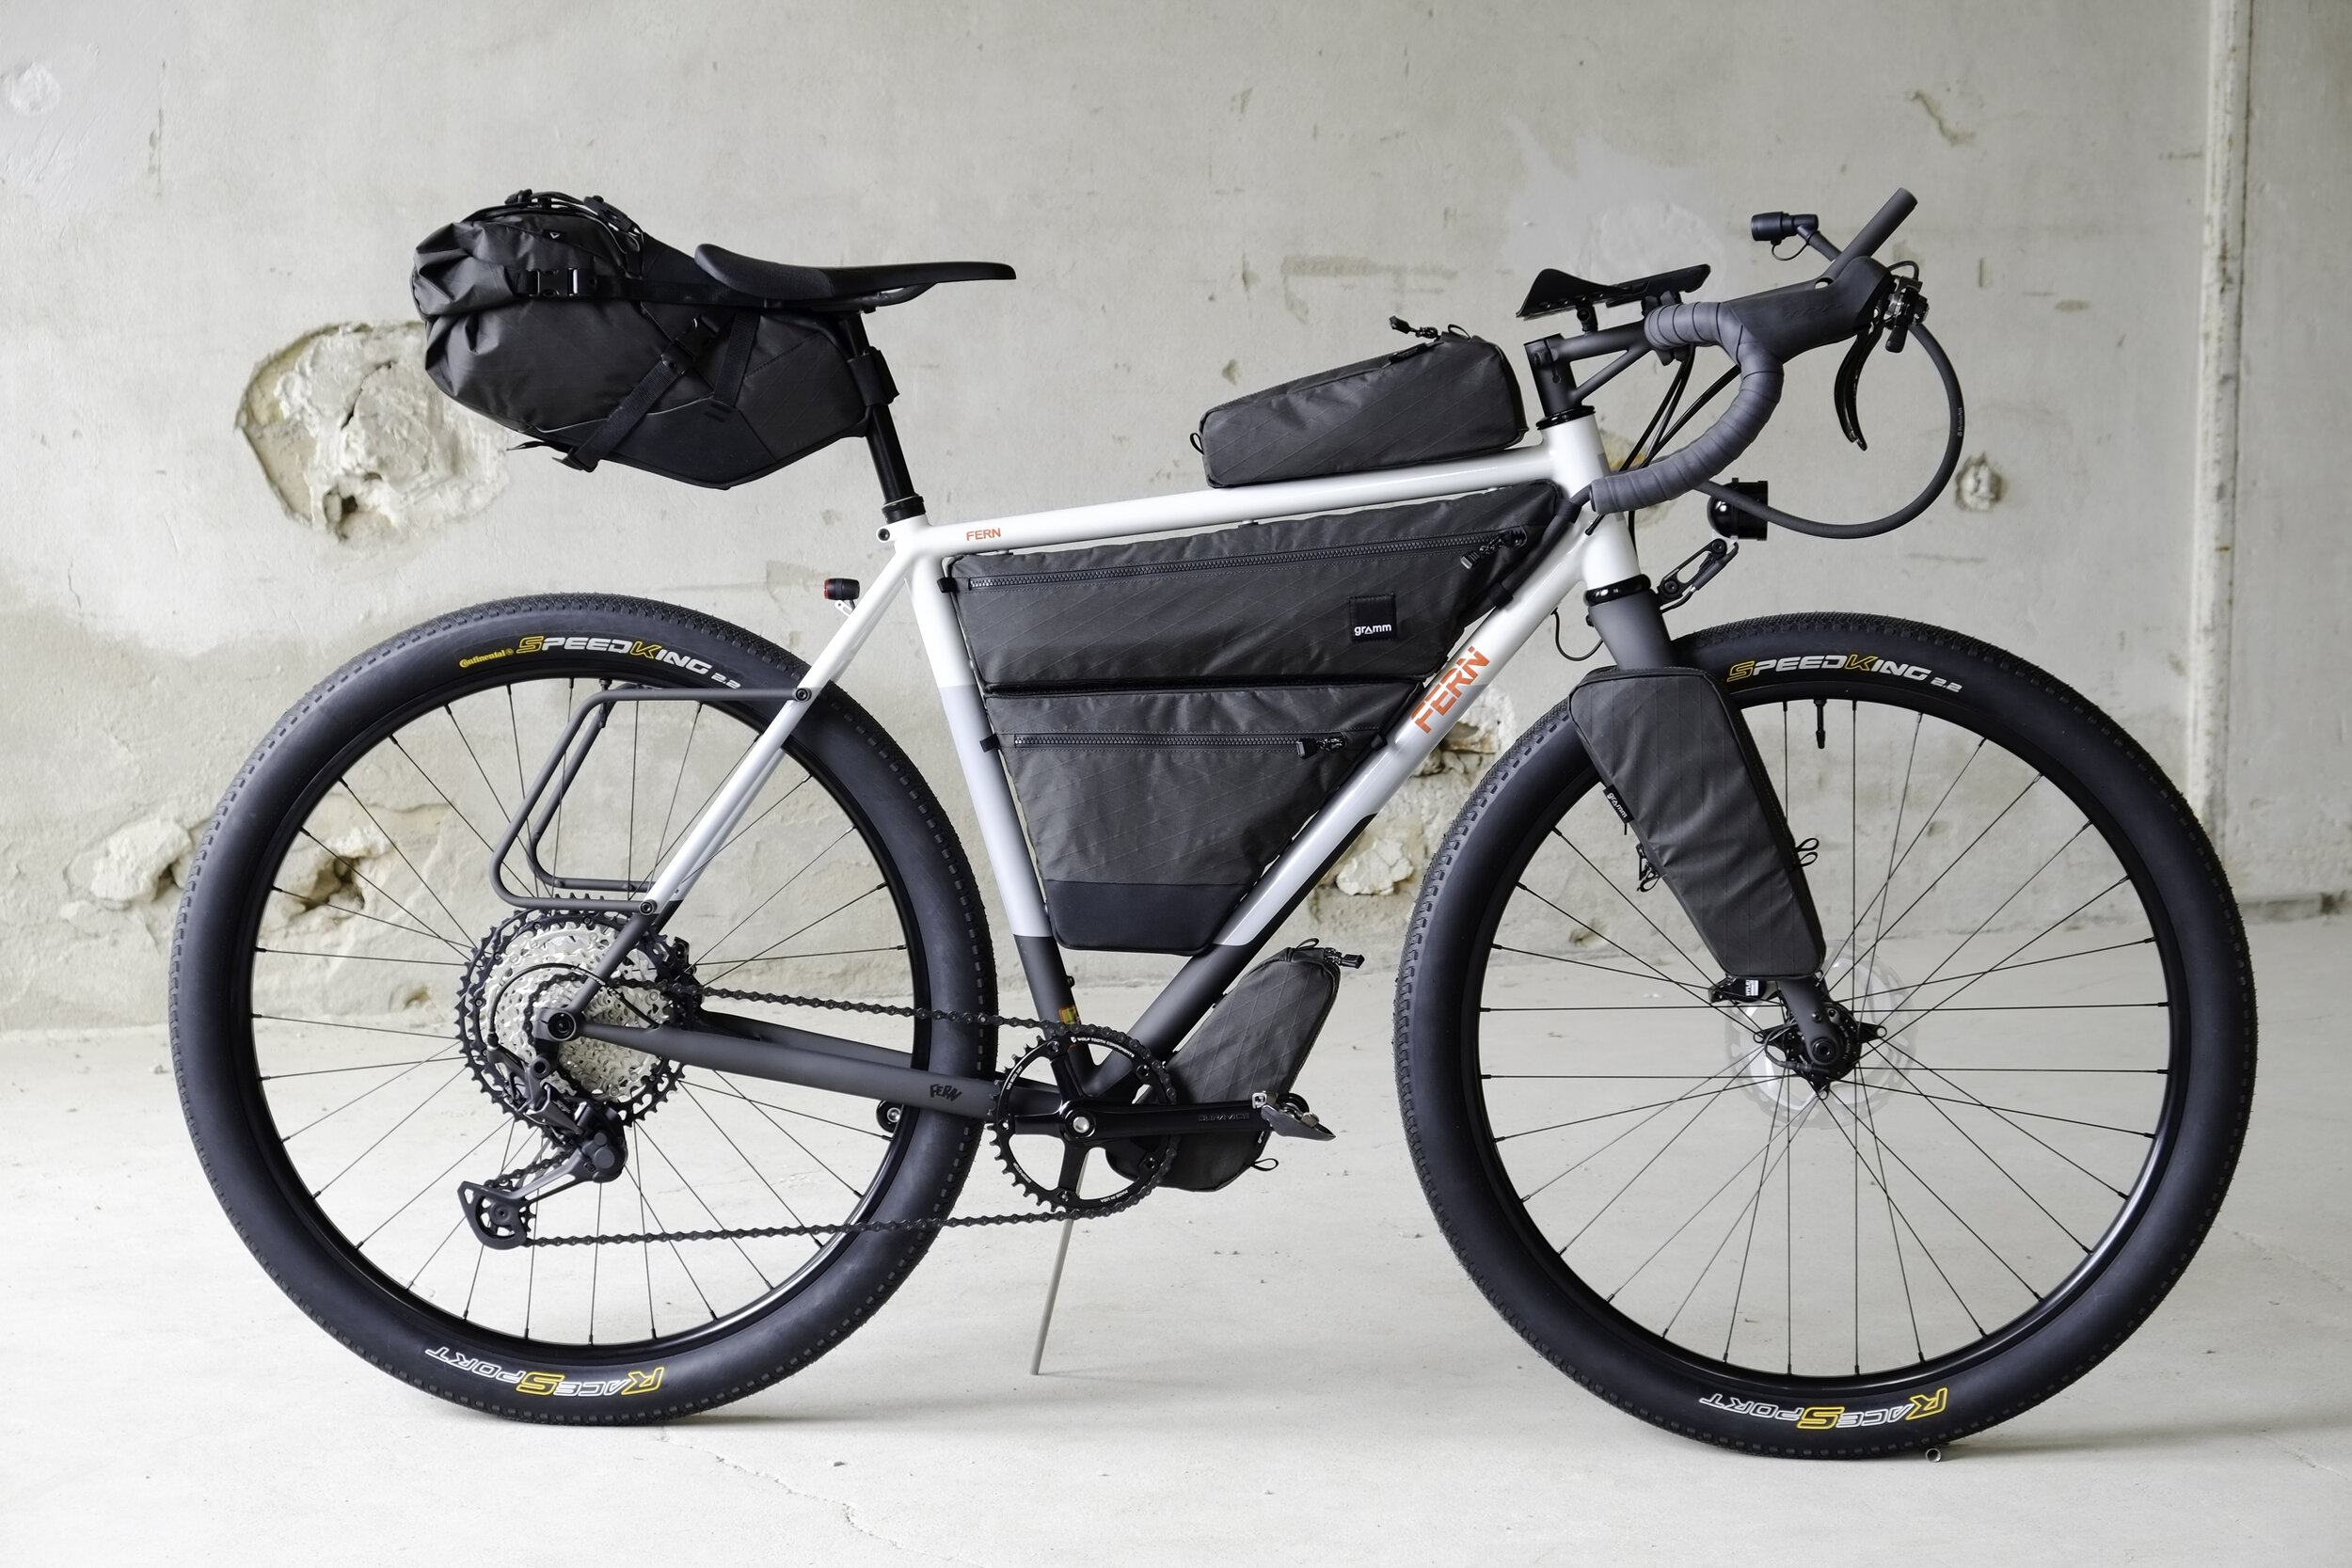 Show bike GRAMM x FERN 2020 — gramm tourpacking | bikepacking bags